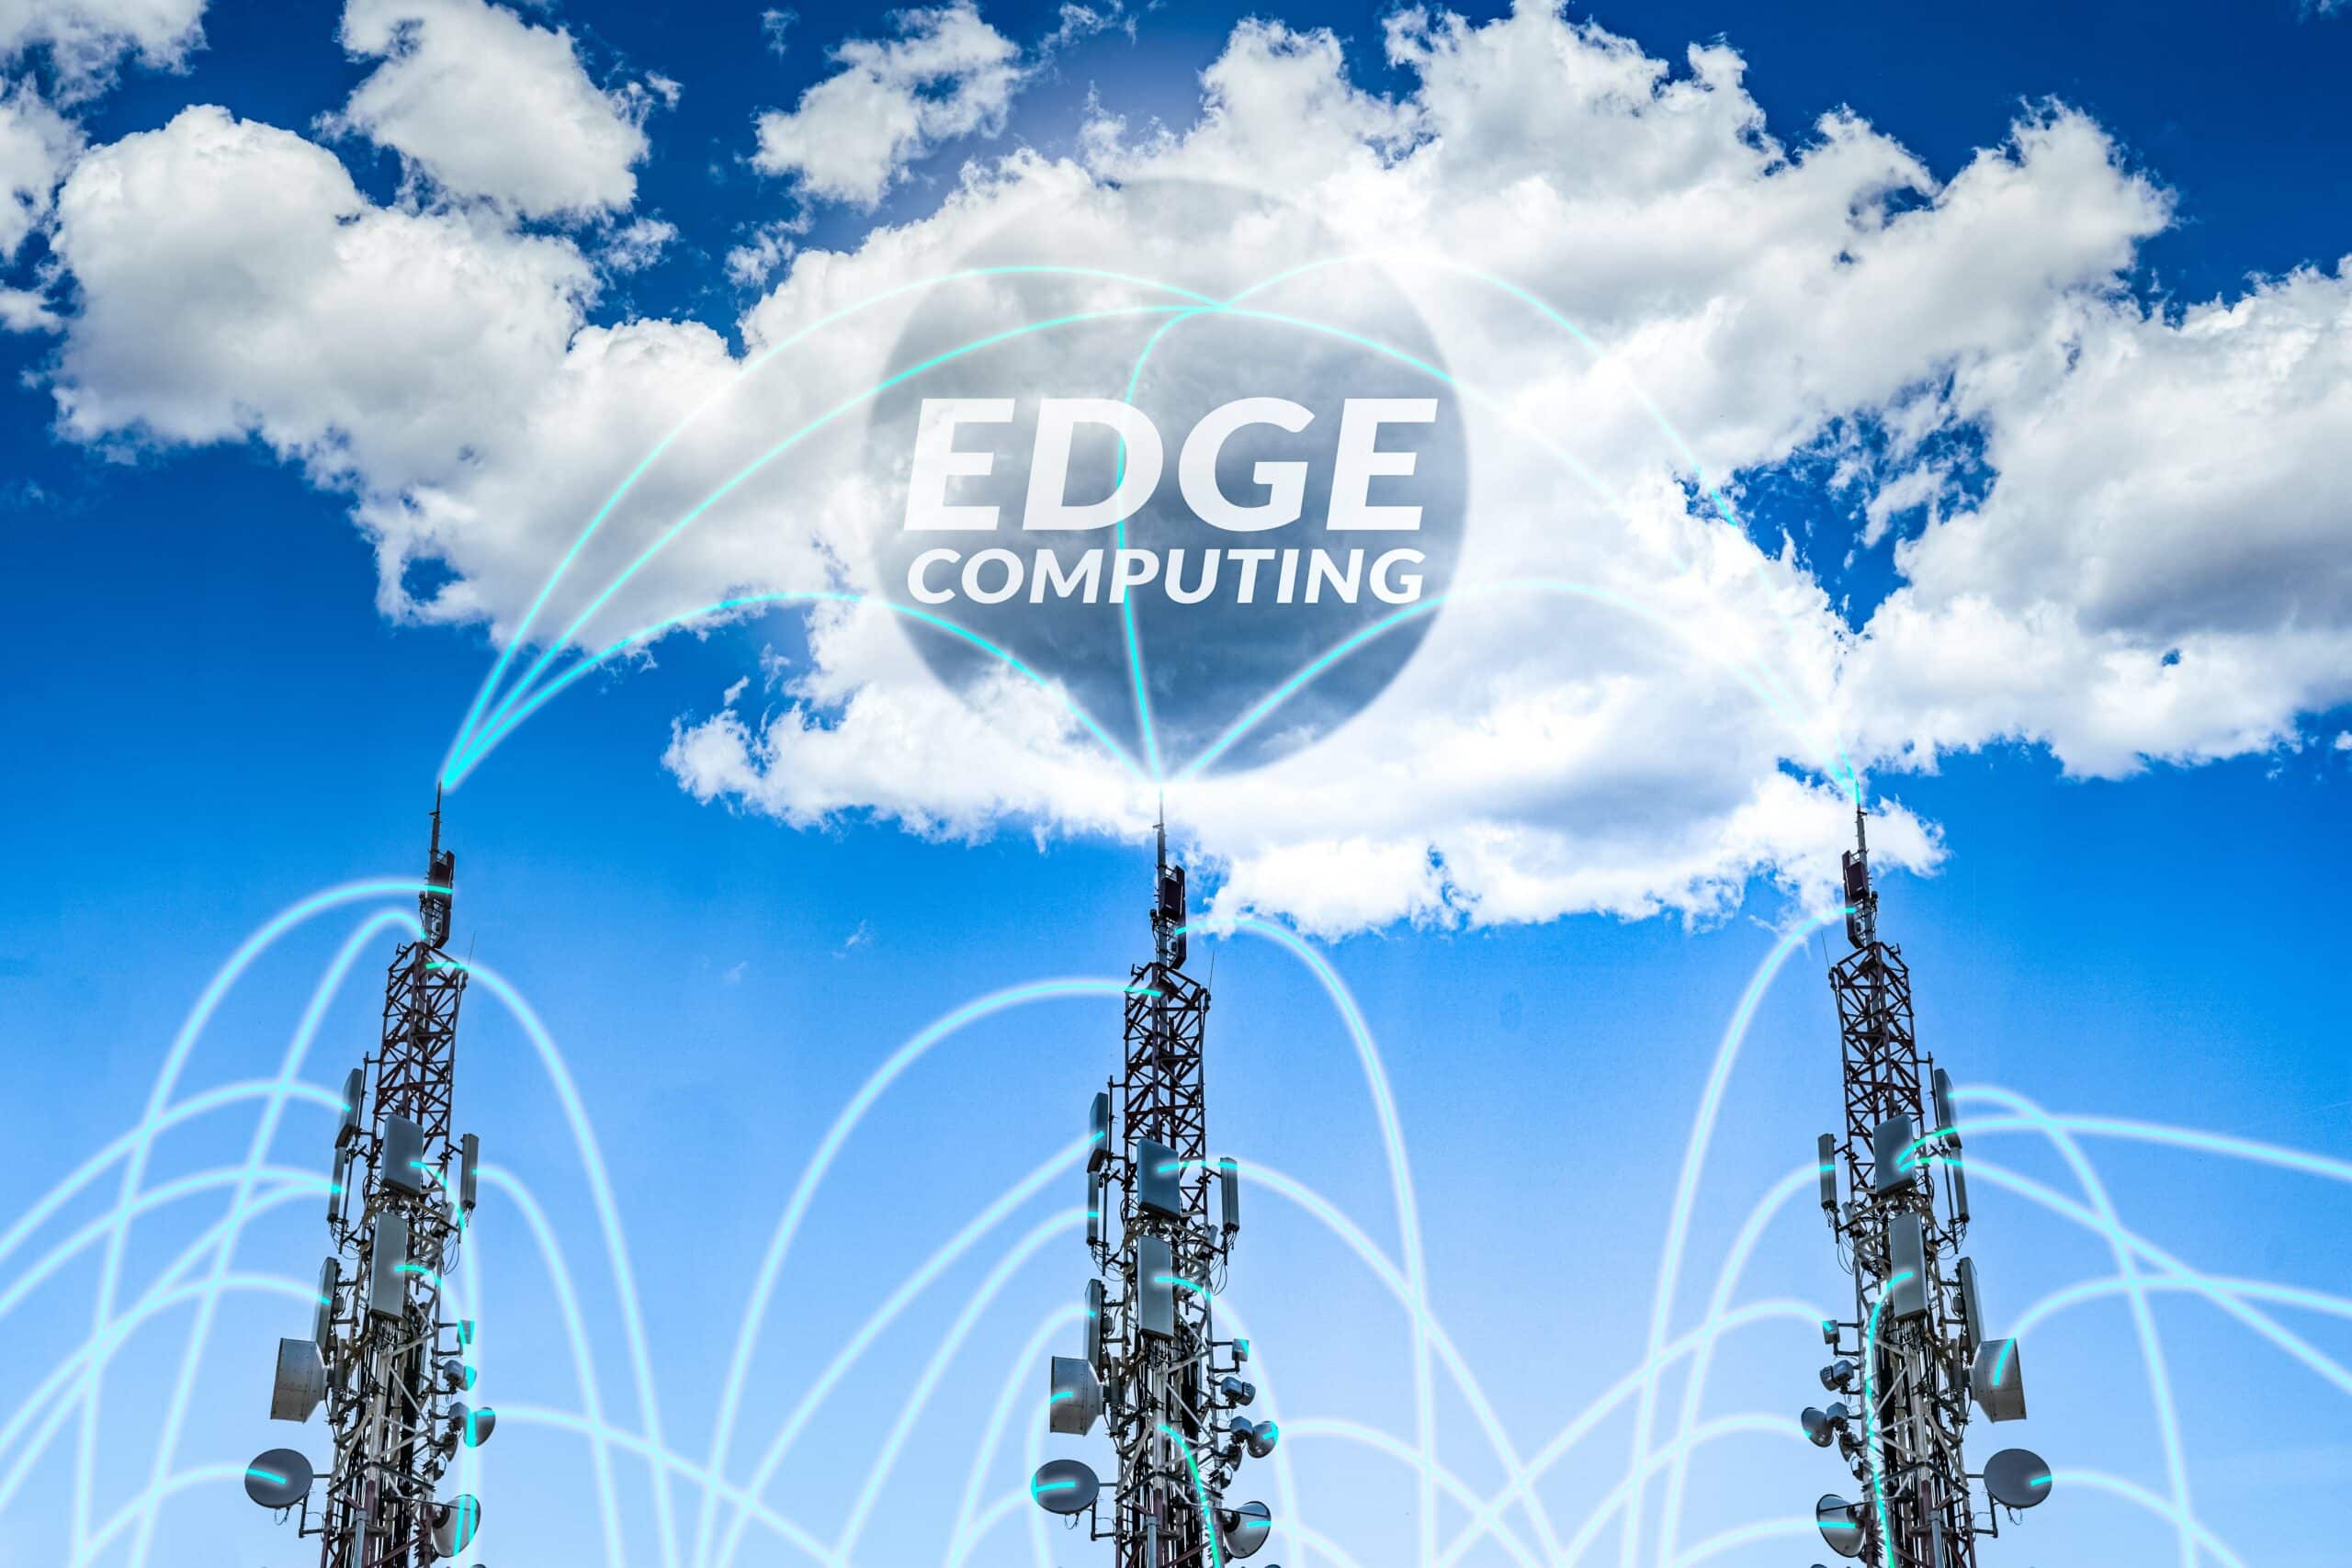 En illustration som visar konceptet med Edge Computing, där datanätverksmaster under en klar blå himmel med flytande vita moln skapar en visuell länk till ordet 'EDGE COMPUTING' som projiceras i molnen, symboliserande närhet till datakällor och minskad latens